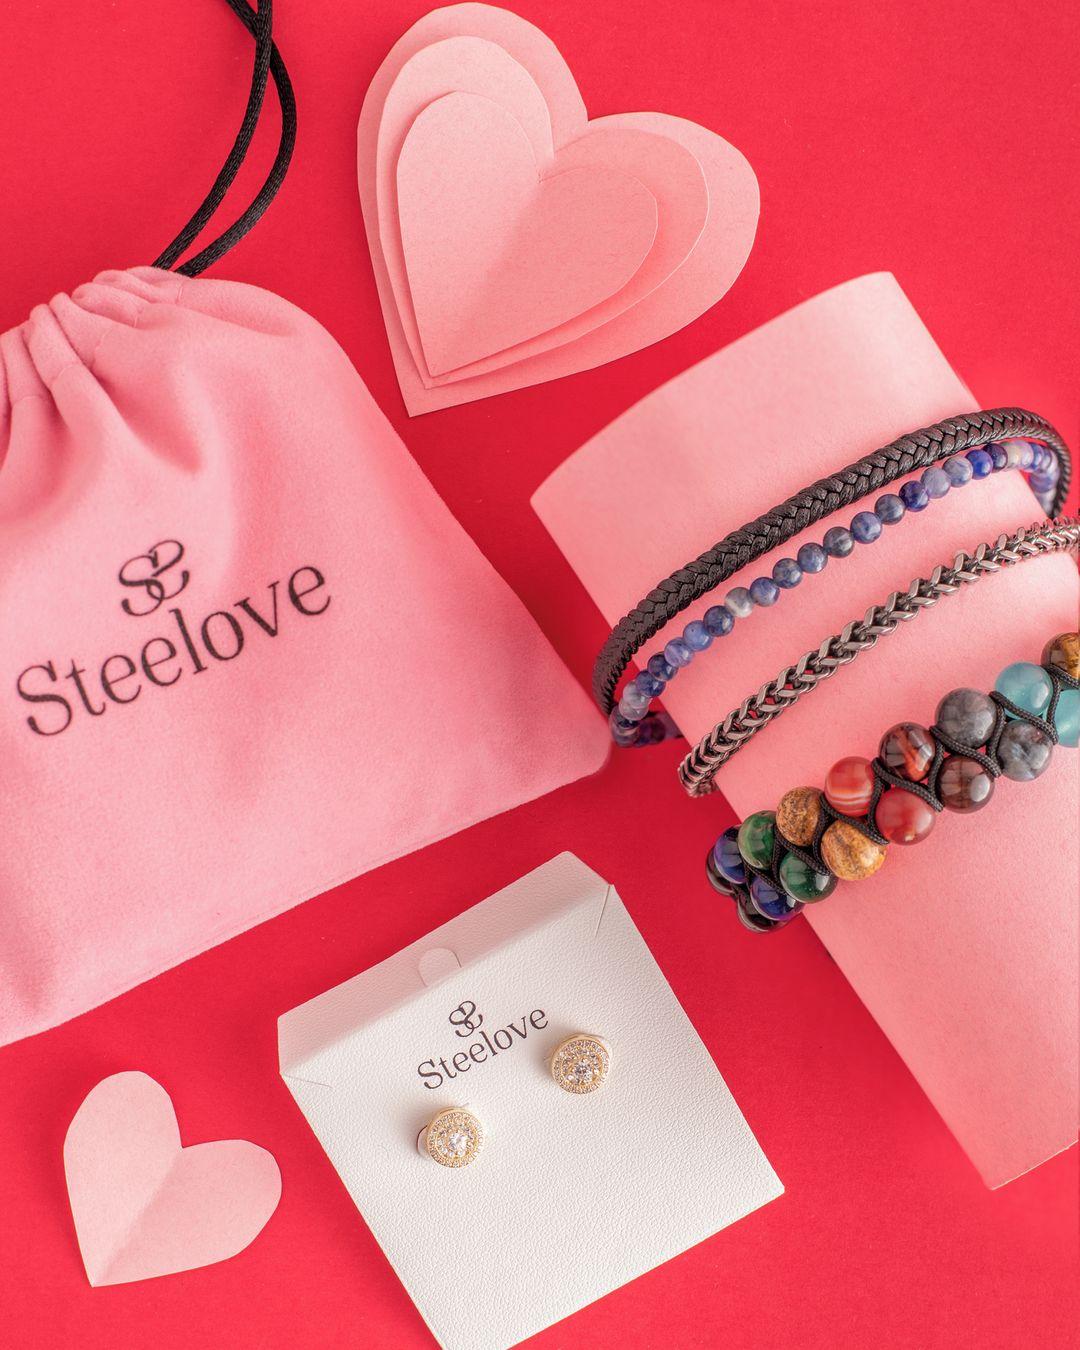 𝐏𝐨𝐫𝐪𝐮𝐞 𝐚 𝐥𝐨𝐬 𝐡𝐨𝐦𝐛𝐫𝐞𝐬 𝐭𝐚𝐦𝐛𝐢𝐞́𝐧 𝐬𝐞 𝐥𝐞𝐬 𝐫𝐞𝐠𝐚𝐥𝐚 🙌🏽⁣
Conoce aquí la variedad de brazaletes disponibles para caballeros y pregúntame por lo que te llevas al comprarle su detallito 😉.⁣
⁣
 Te leo en los comentarios 👀👇🏽⬇️🤗⁣⁣⁣⁣
⁣⁣⁣⁣
📍AGORA MALL 📍DOWNTOWN 📍PLAZA LAS AMÉRICAS II⁣⁣⁣⁣⁣⁣
www.steelove.com⁣⁣⁣
🛍️WhatsApp ＋1-809-567-0540 ＋1-201-952-8518⁣⁣⁣⁣⁣⁣
⁣⁣⁣⁣
#steelove #steelovestore #joyas #accesorios #jewelry #loveissteelove #amoryamistad #sanvalentin